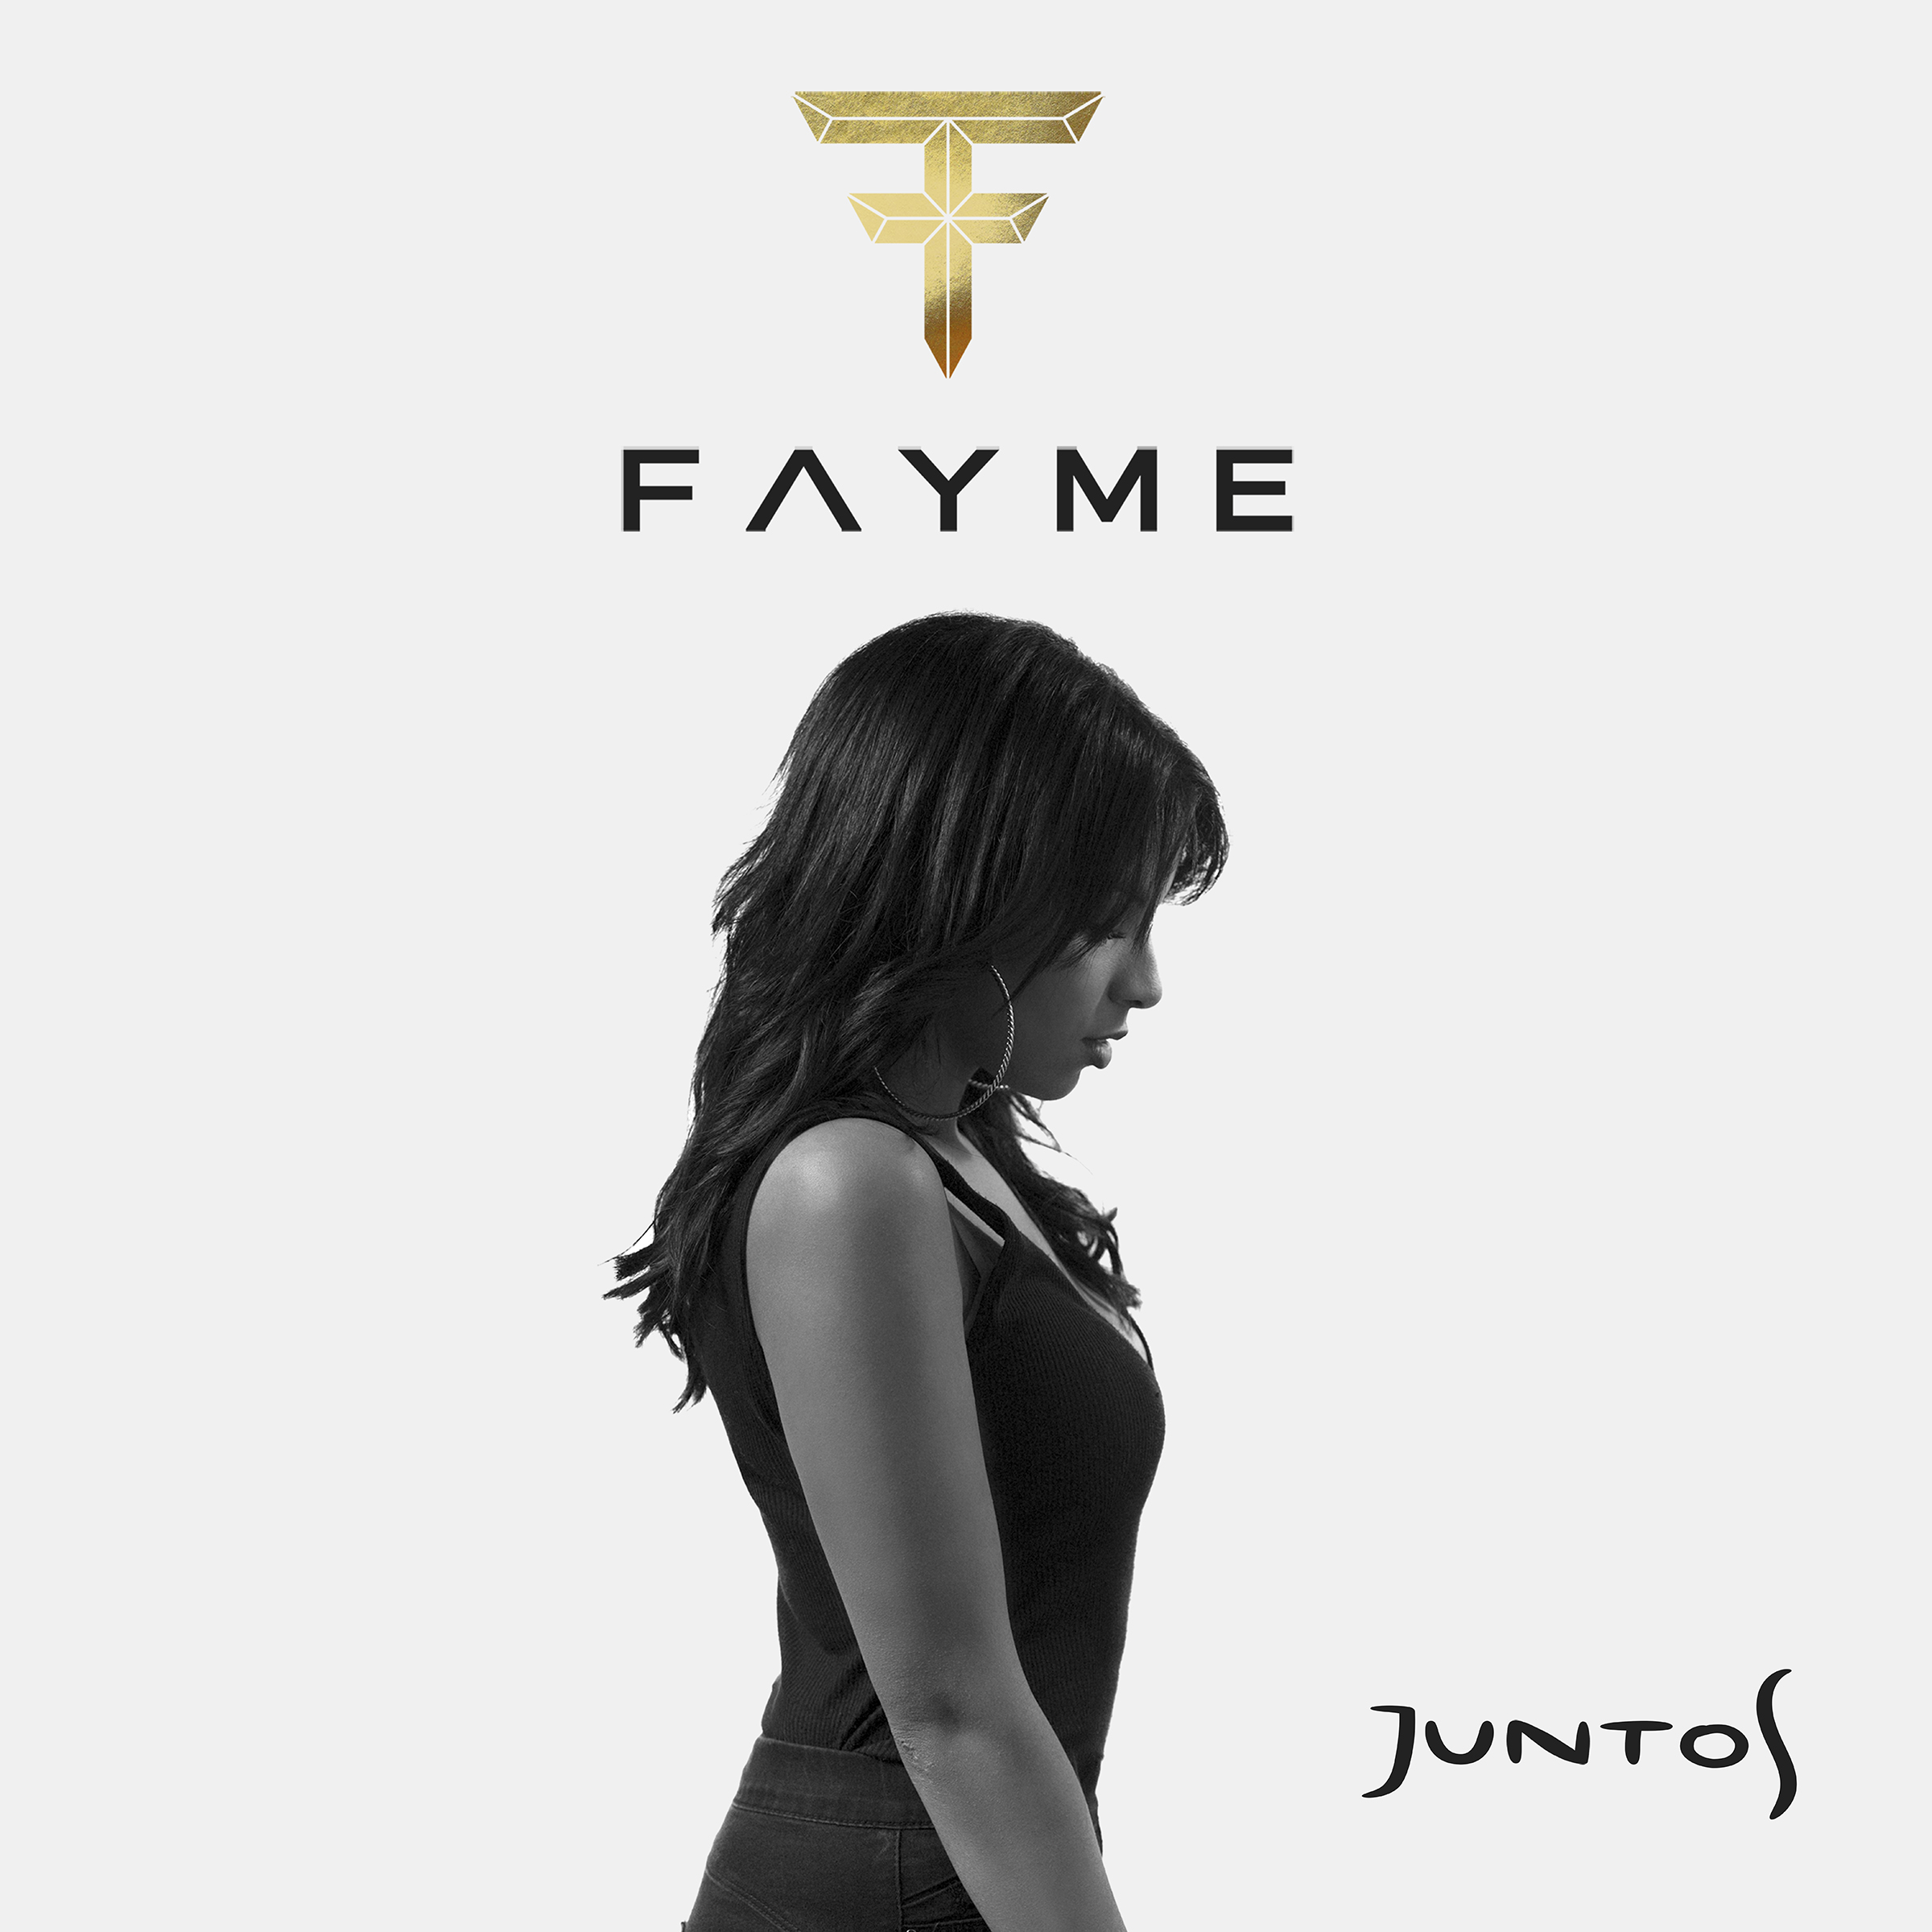 Fayme supera los 100k en Spotify